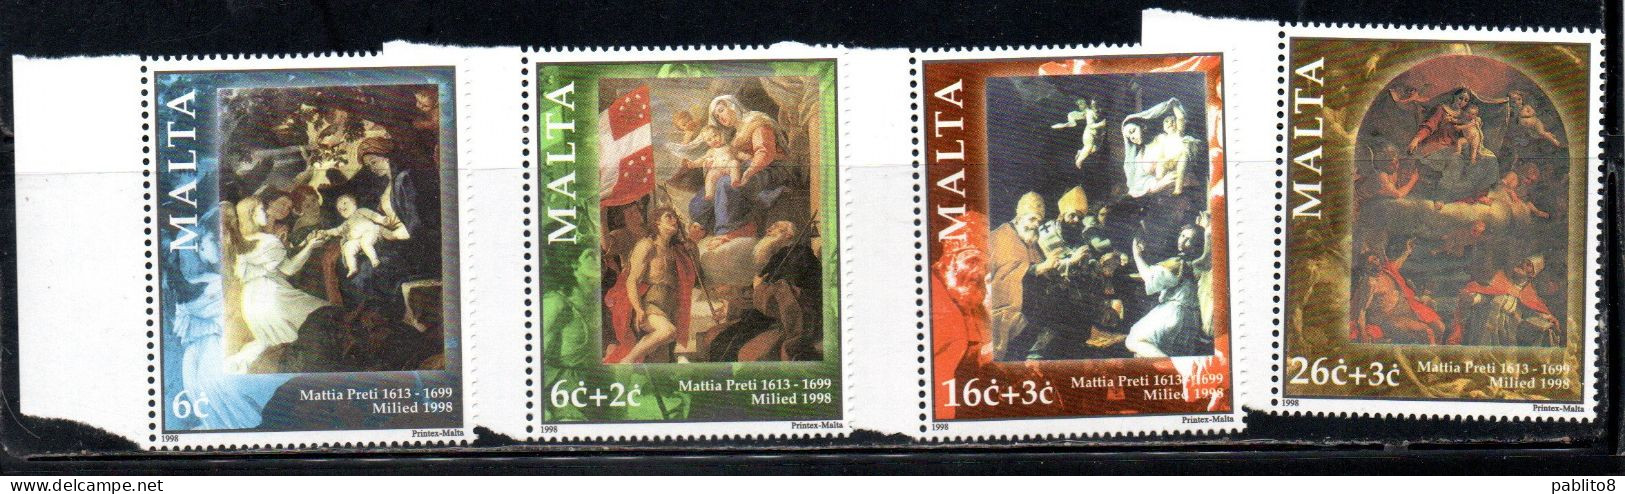 MALTA 1998 CHRISTMAS NATALE NOEL WEIHNACHTEN NAVIDAD COMPLETE SET SERIE COMPLETA MNH - Malte